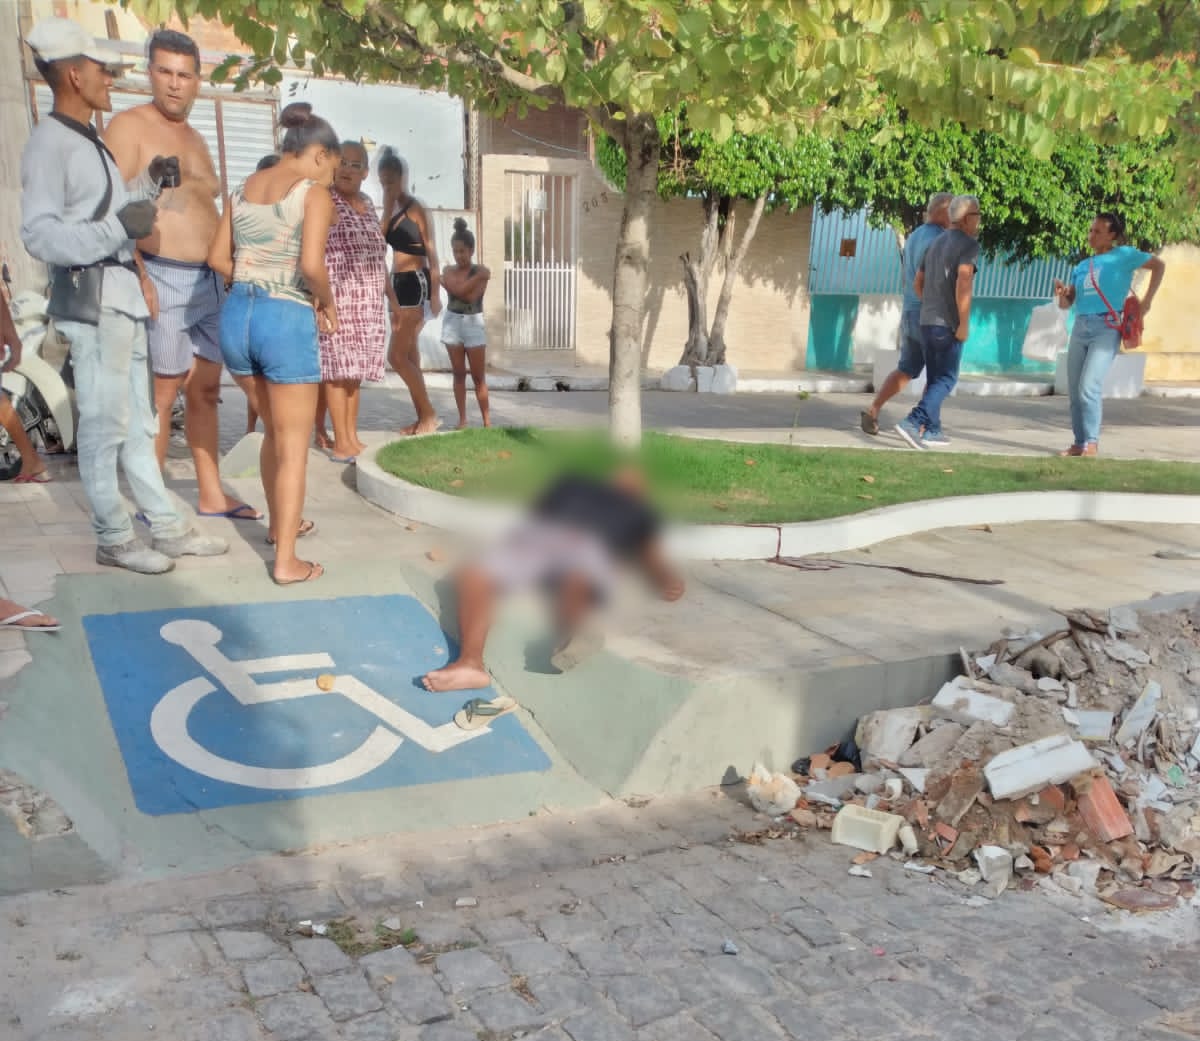 Jovem é executado a tiros em praça pública no interior de Alagoas